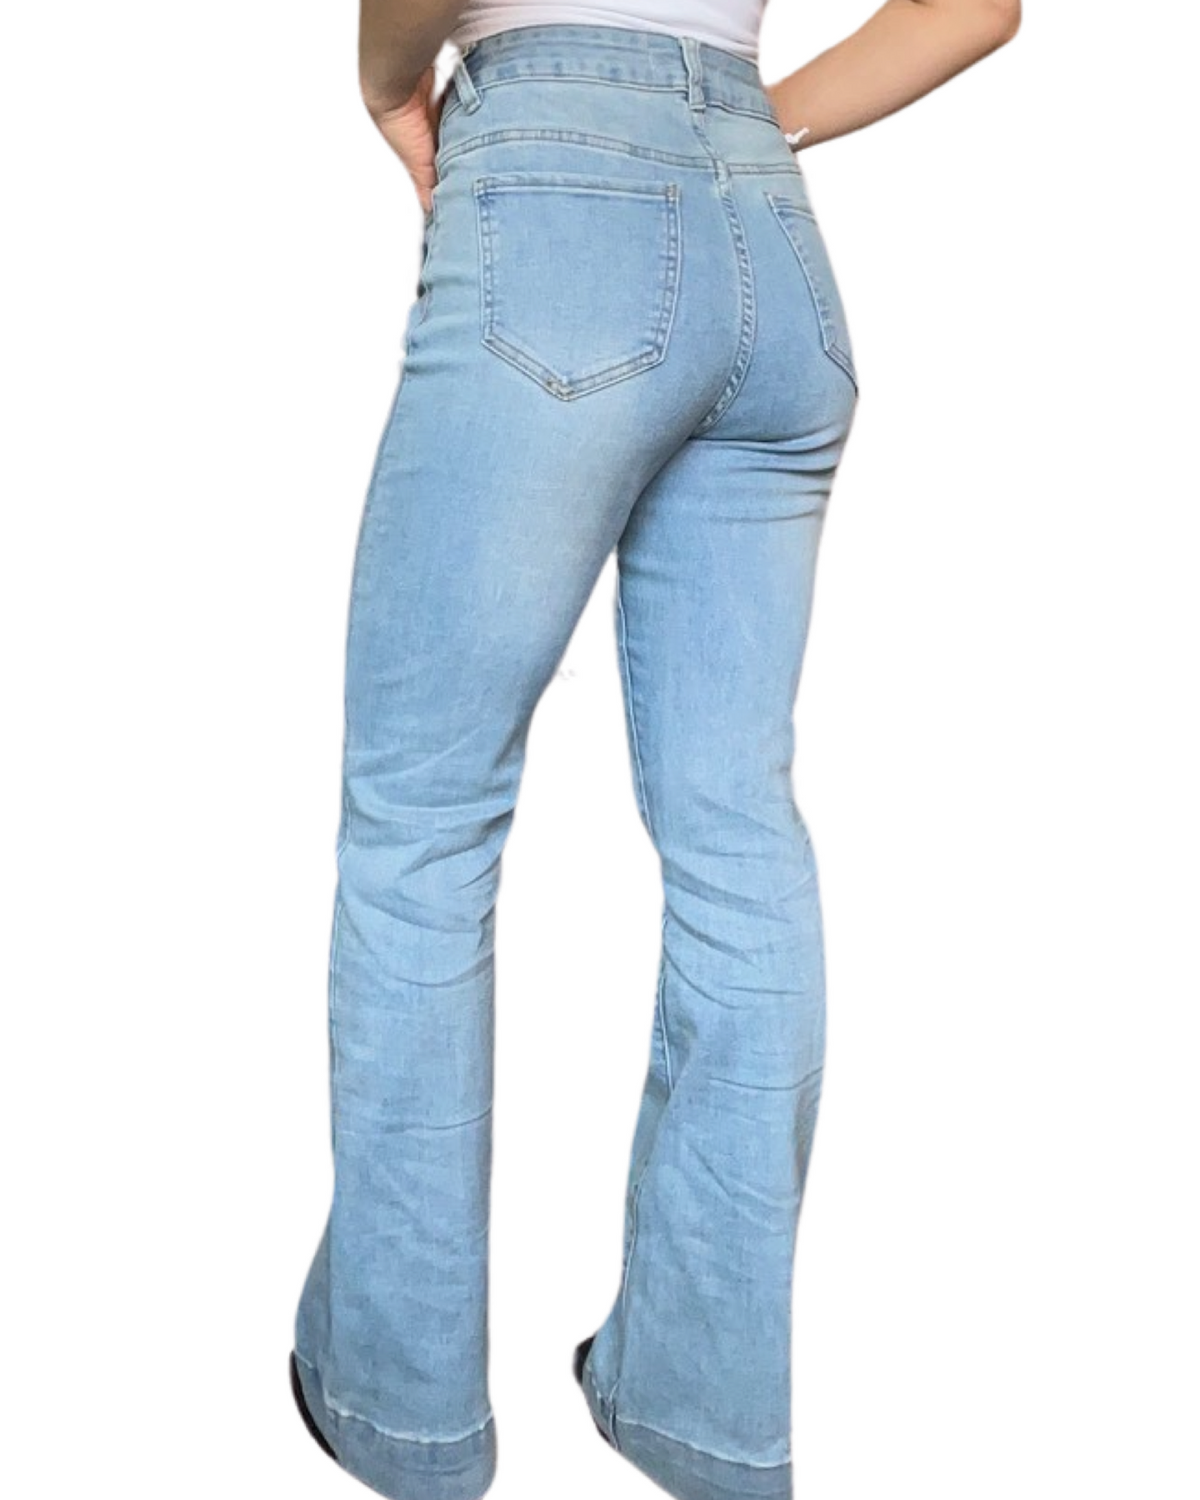 Jeans pour femme flare à taille haute 31 pouces de longueur.